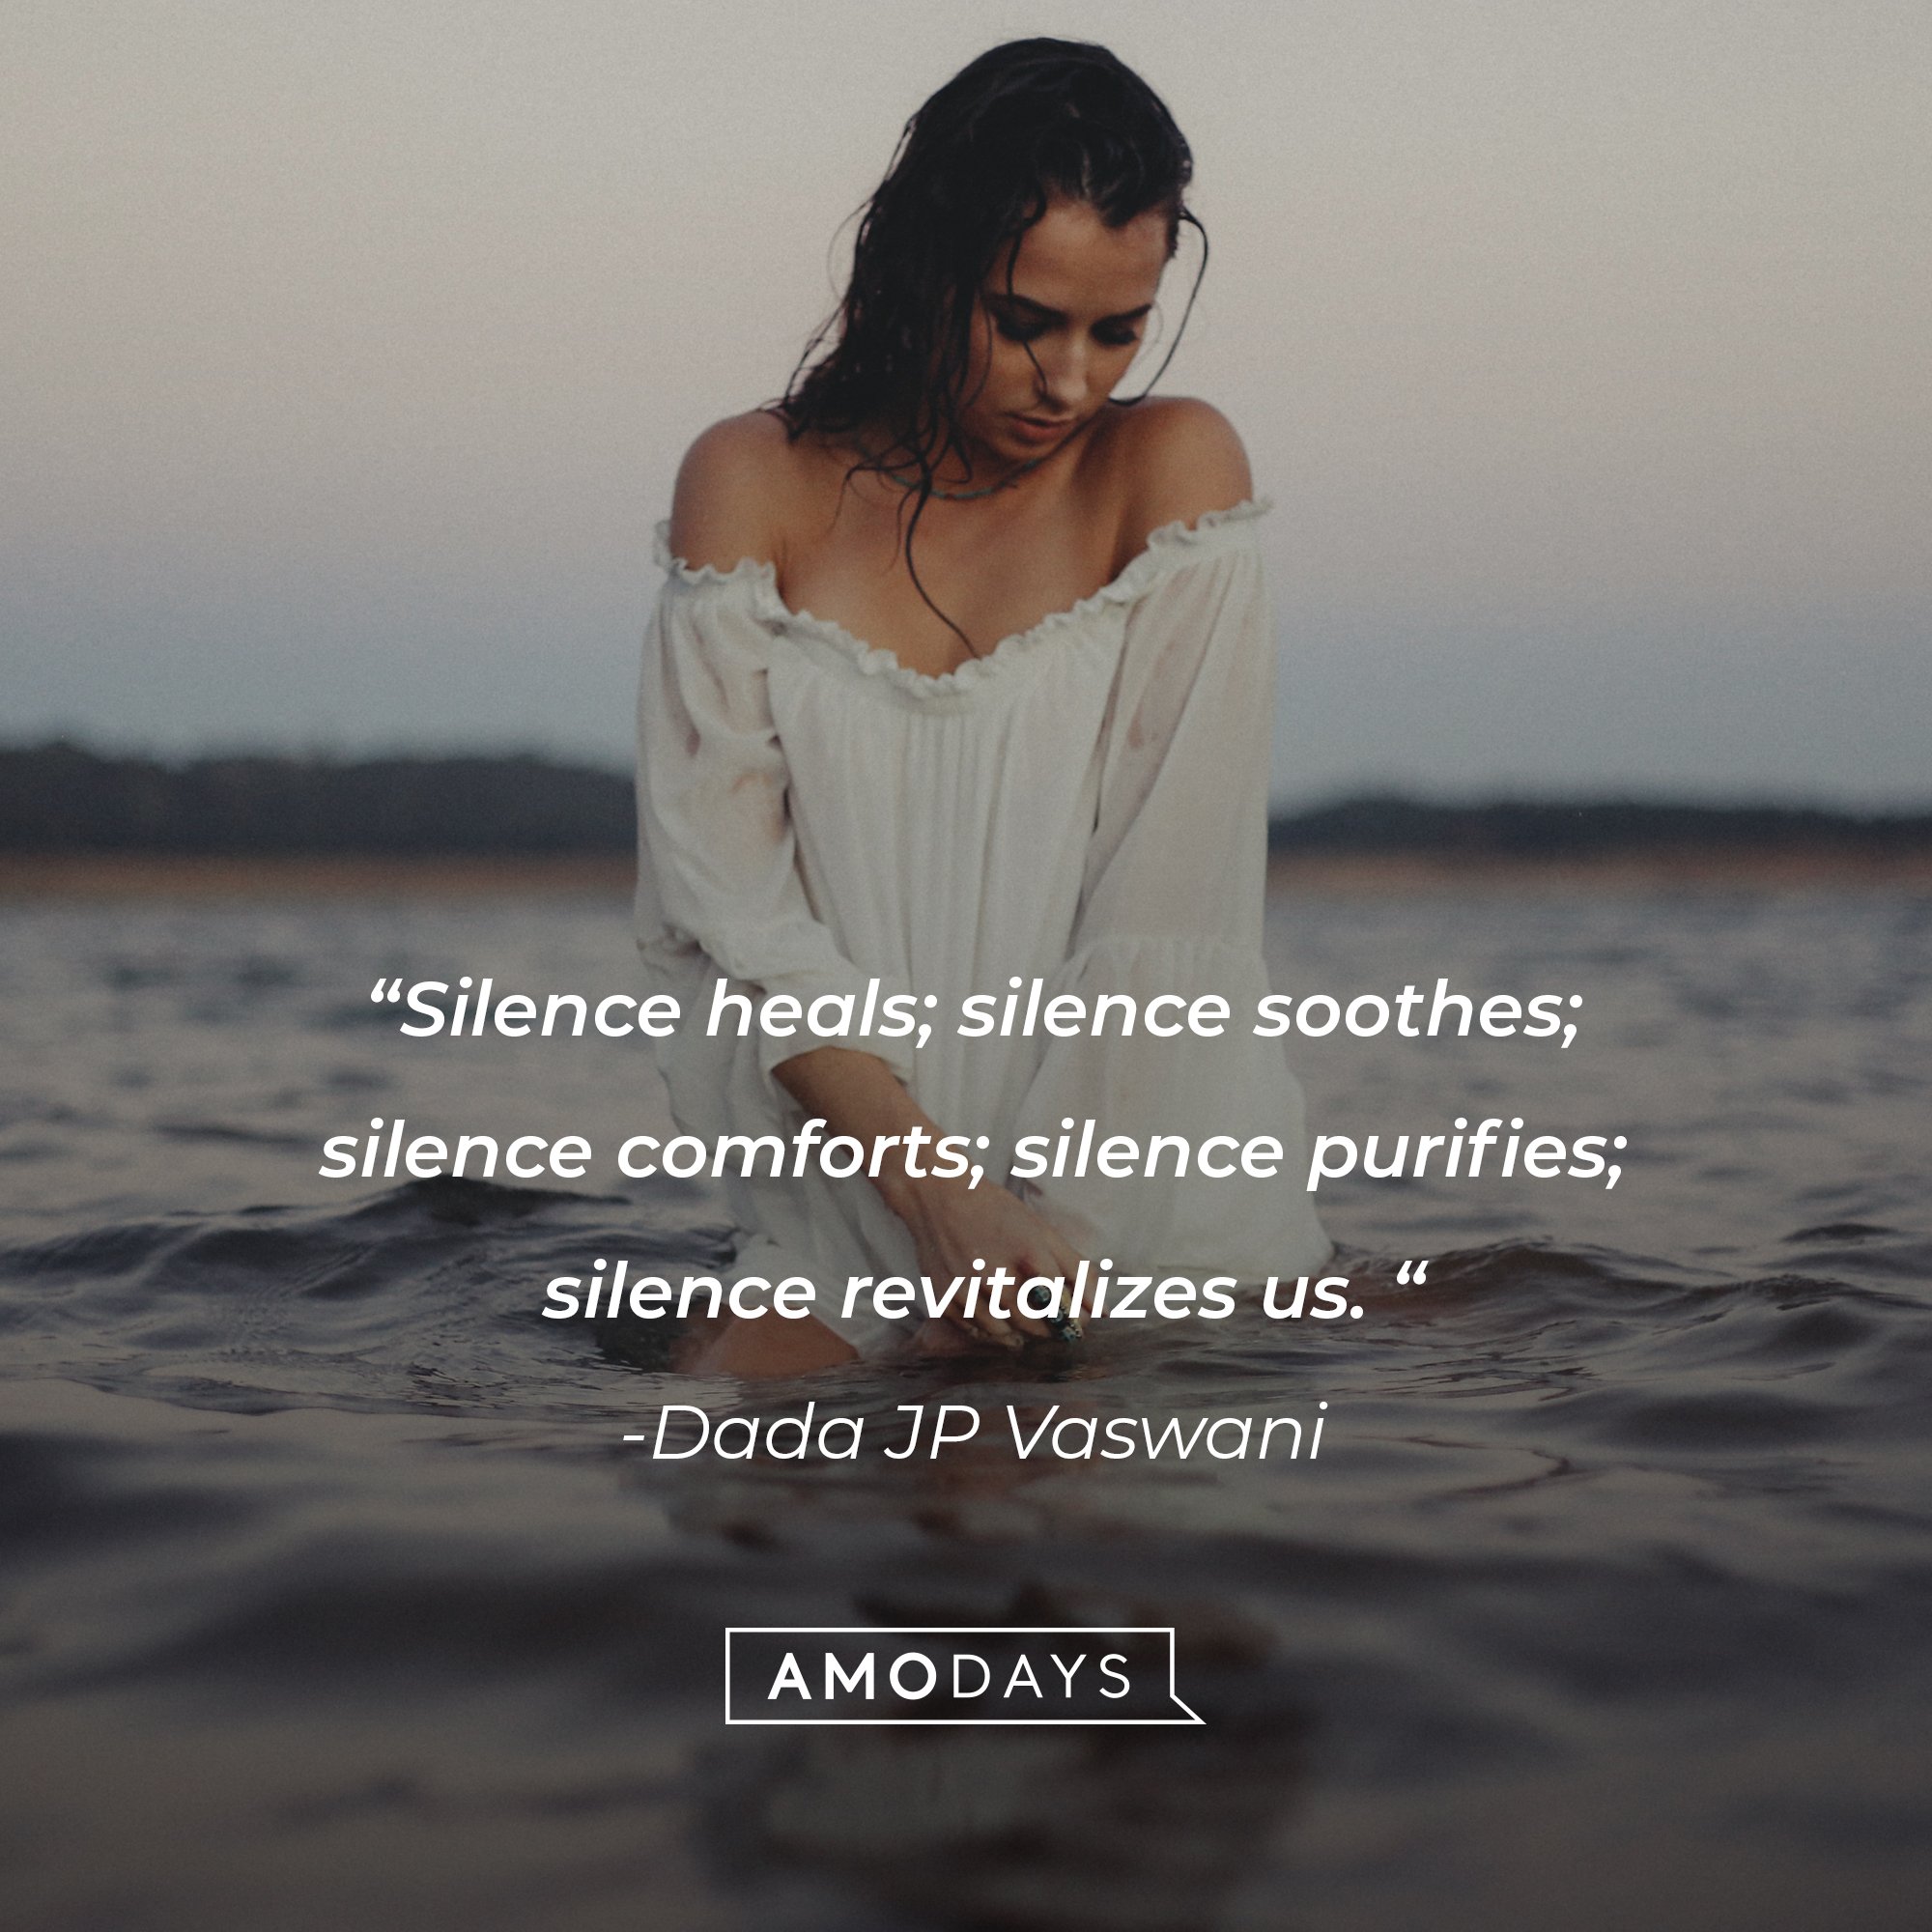 Dada JP Vaswani’s quote: “Silence heals; silence soothes; silence comforts; silence purifies; silence revitalizes us.“ | Image: AmoDays